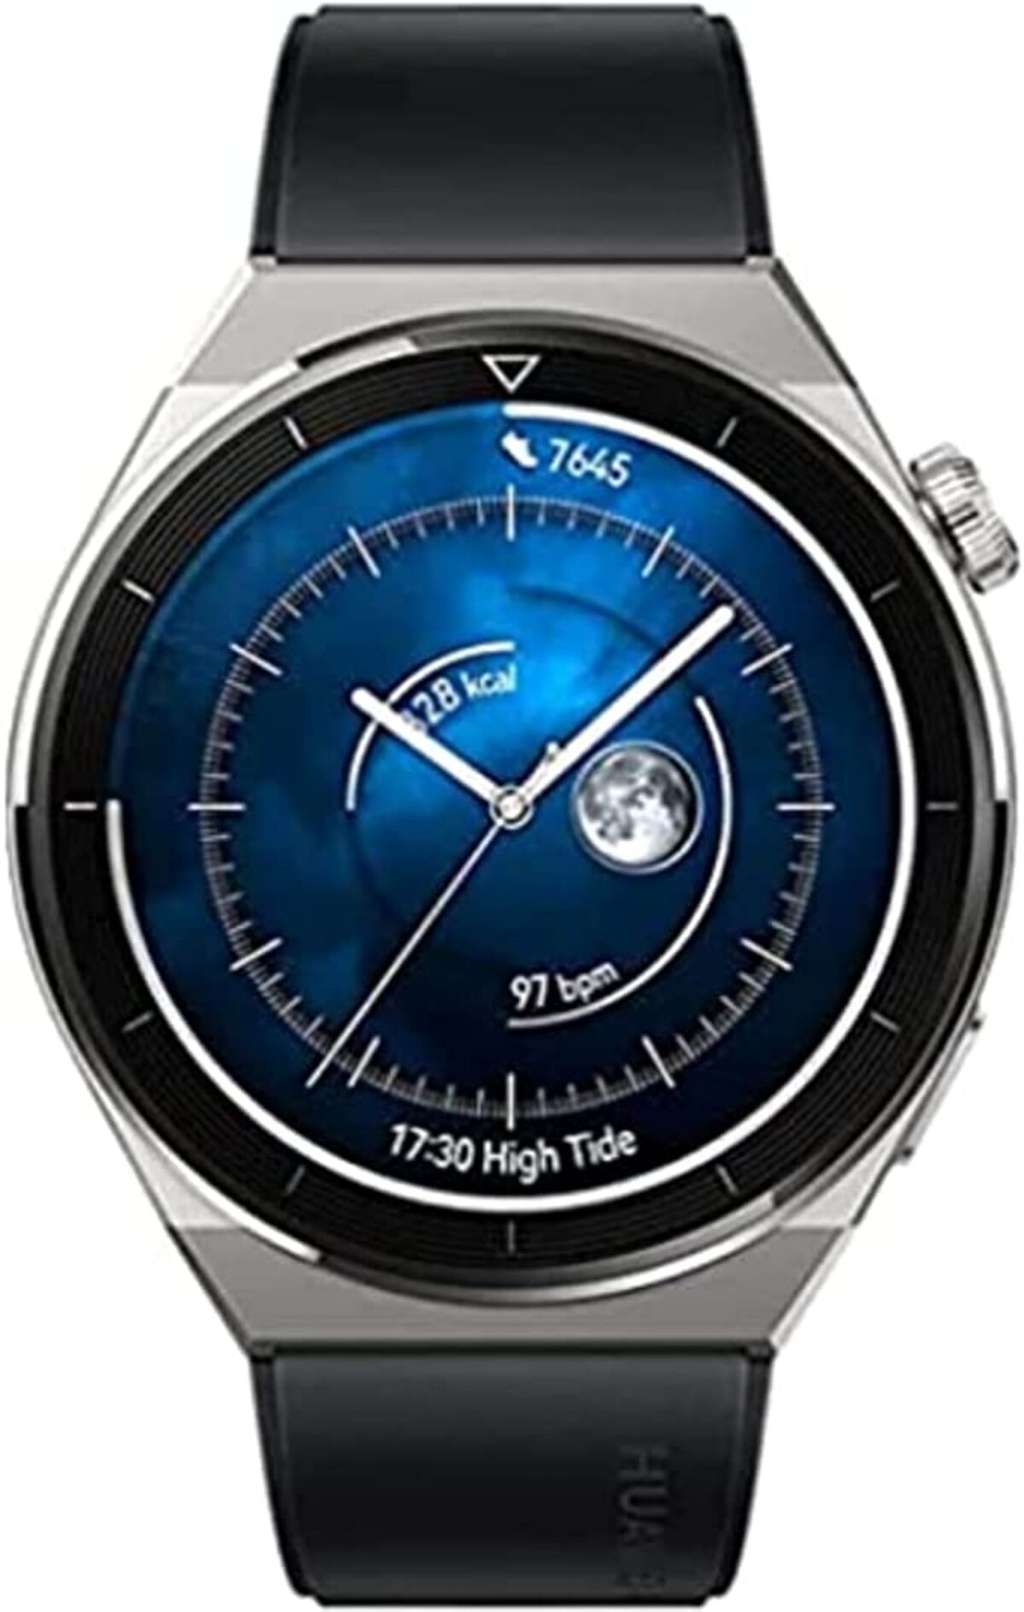 Bon plan : la montre connectée Huawei Watch GT 3 Pro © Amazon